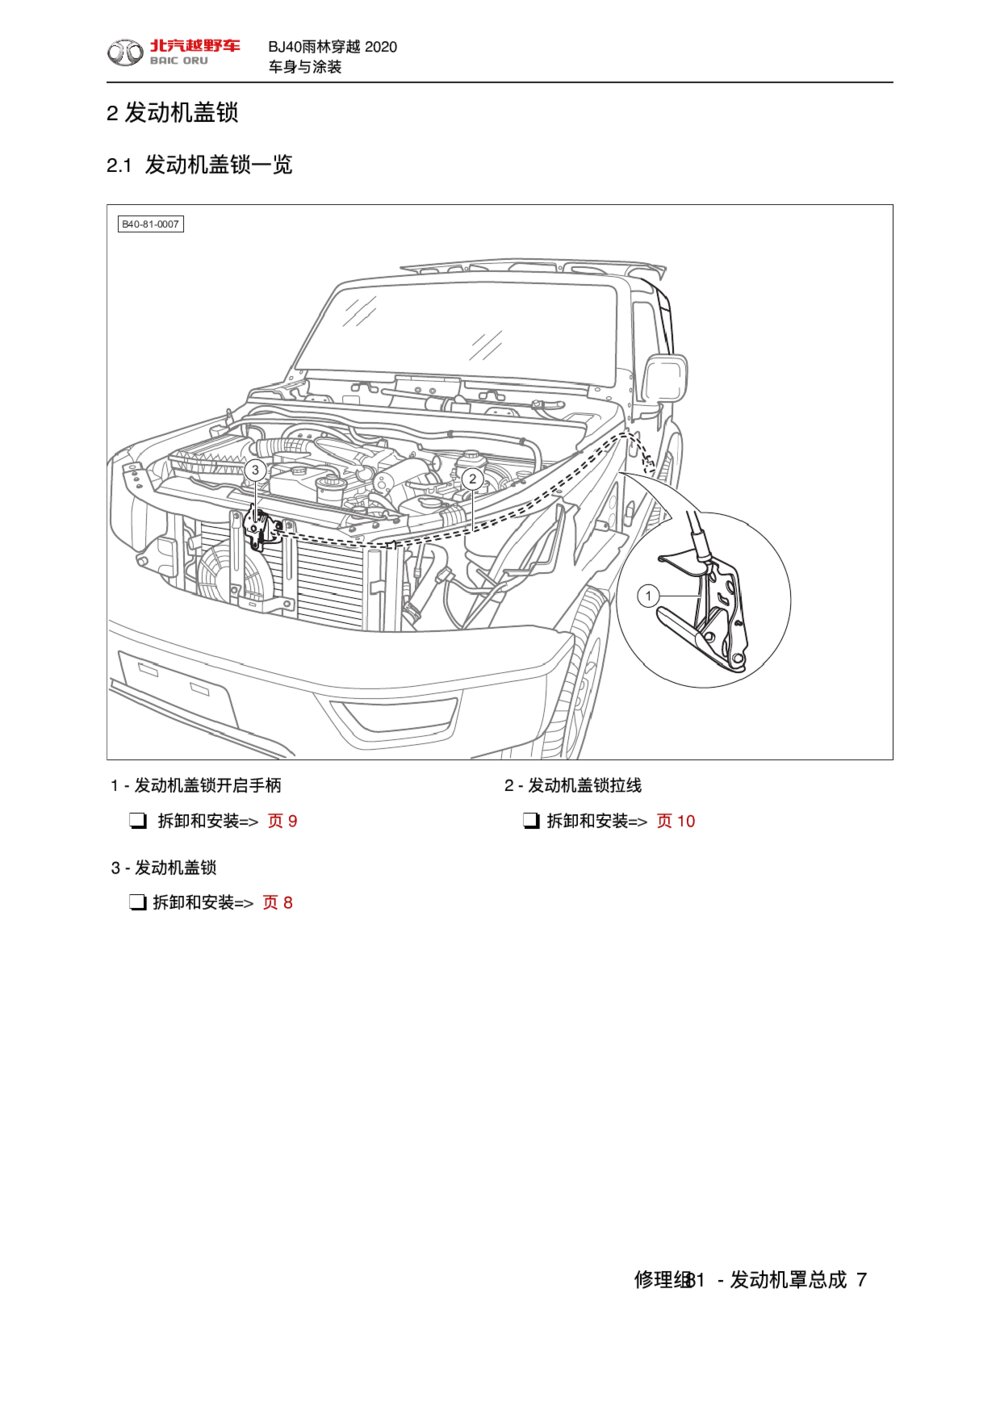 2020款北京BJ40发动机罩总成发动机盖锁拆装手册1